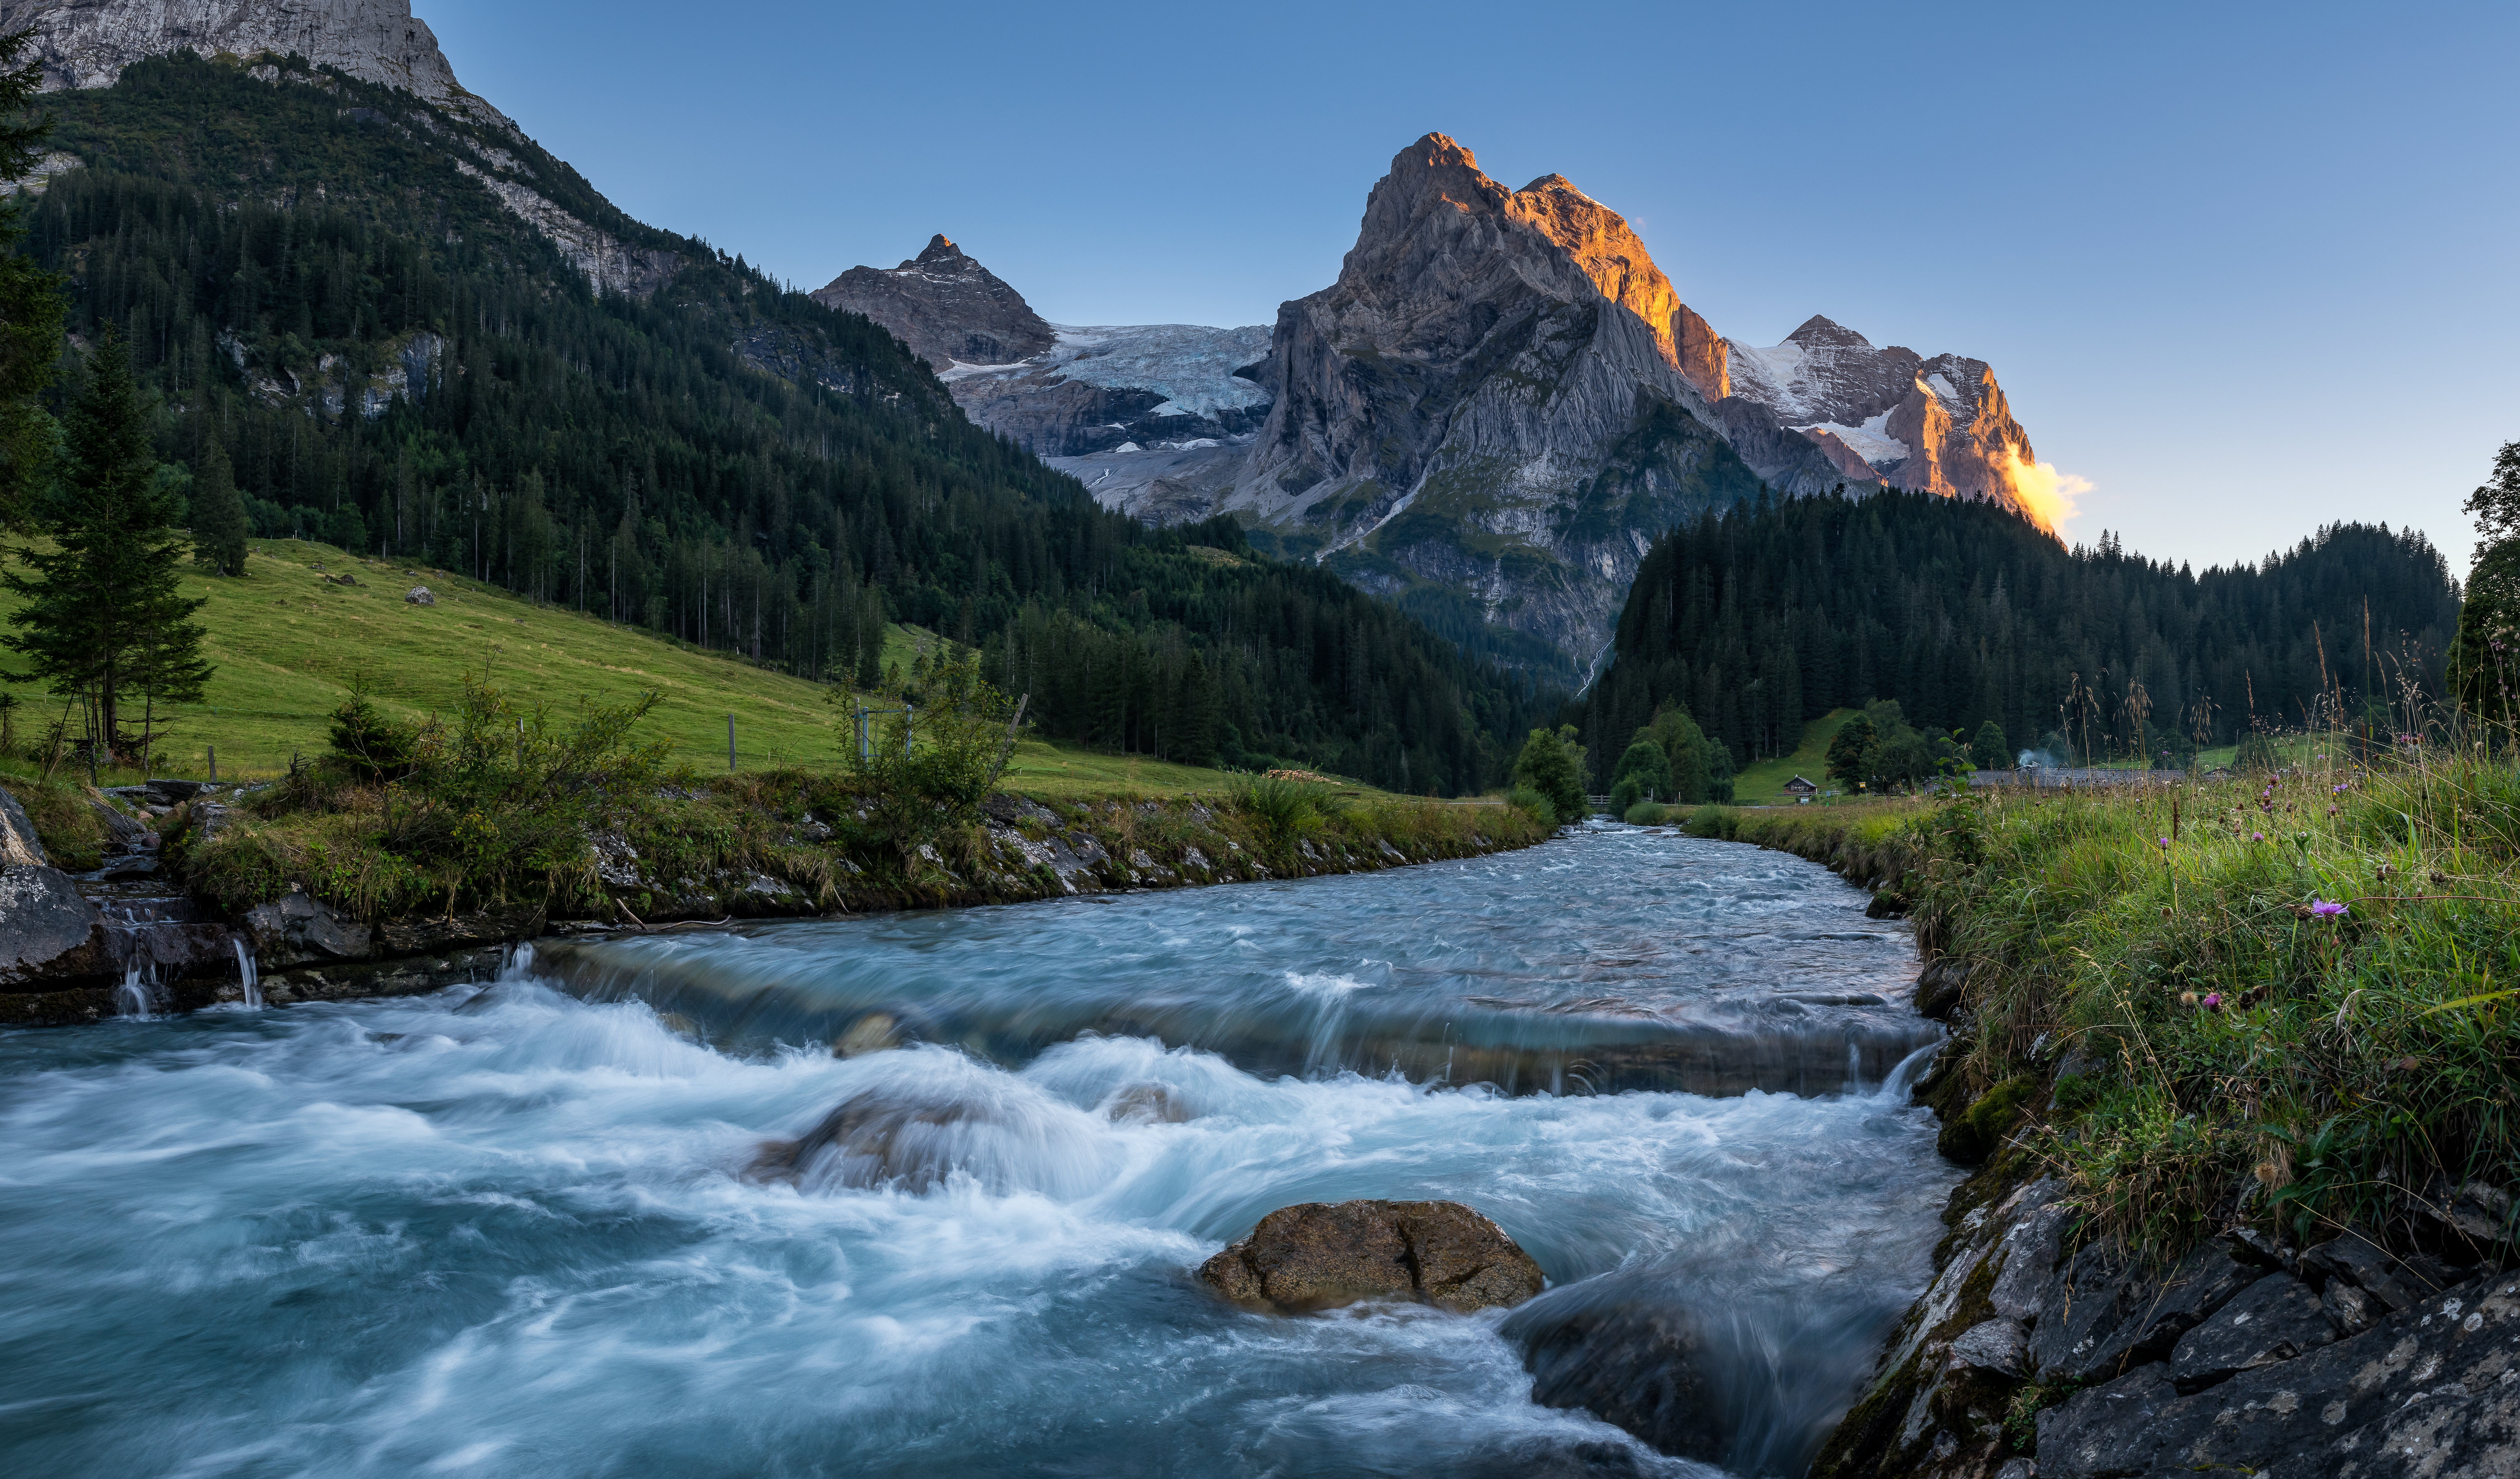 Обои 2560 1600. Долина Розенлау Швейцария. Бернские Альпы Швейцария. Горные реки Альп Италия. Швейцария горные реки.